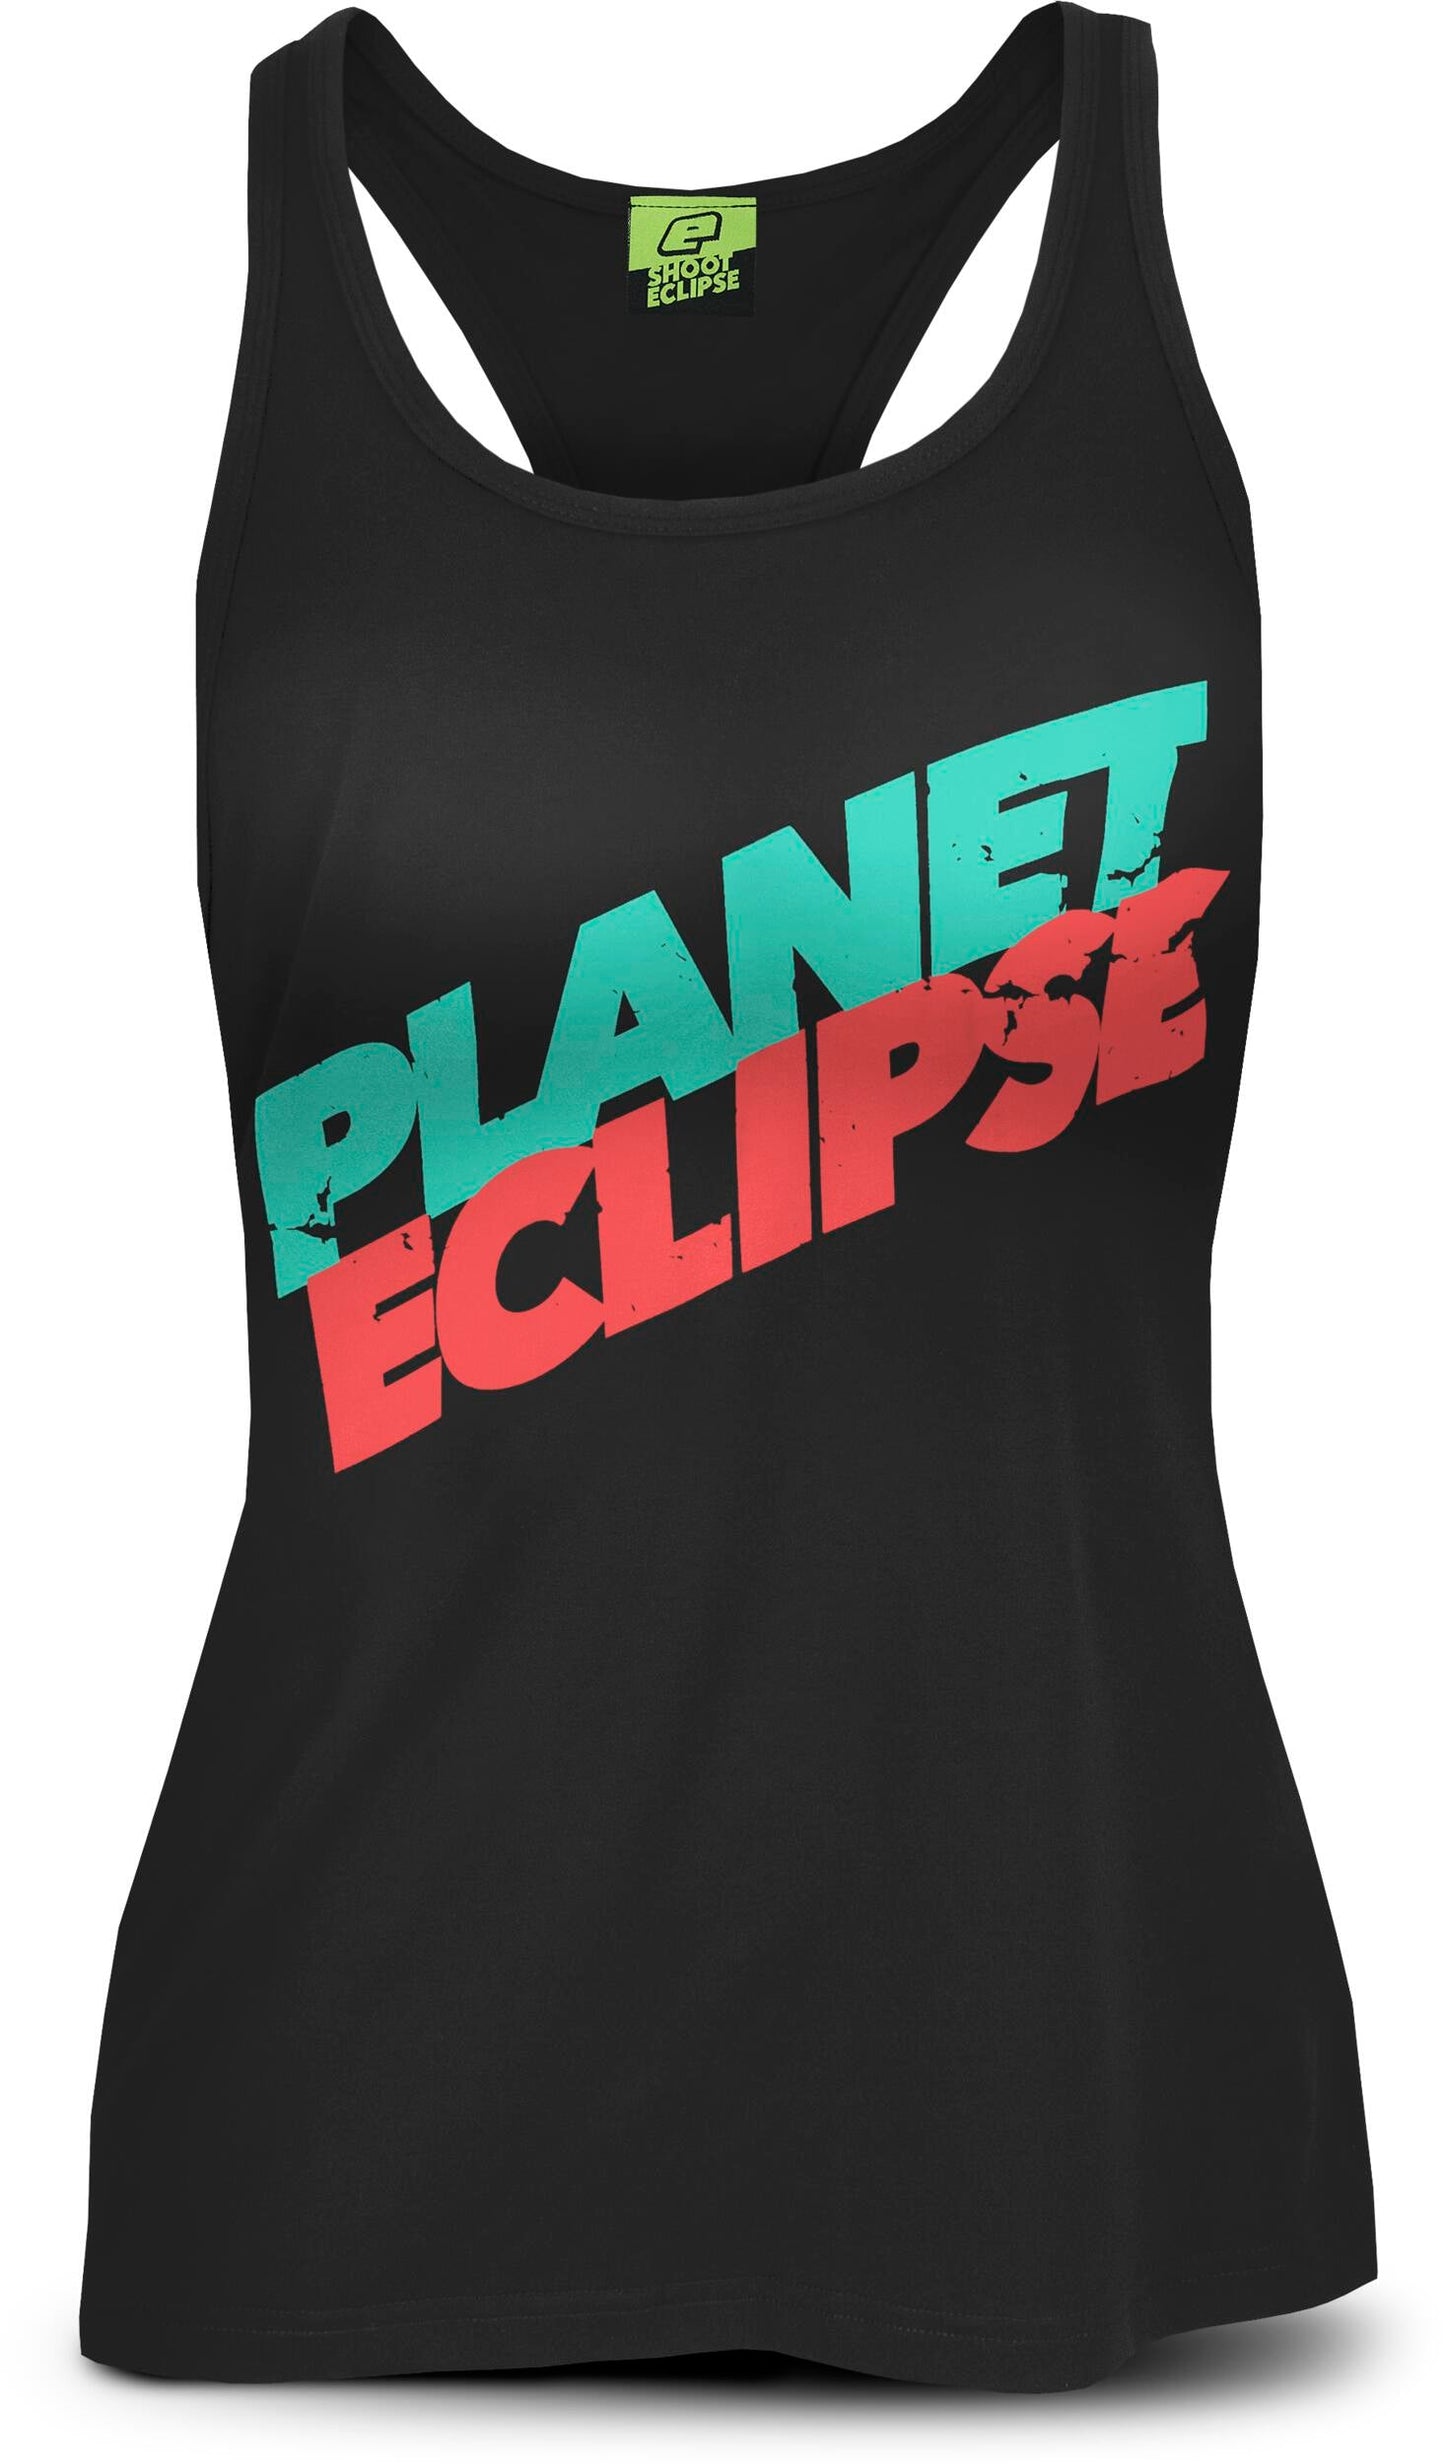 Eclipse Girls Racer Vest Black Mint/Coral